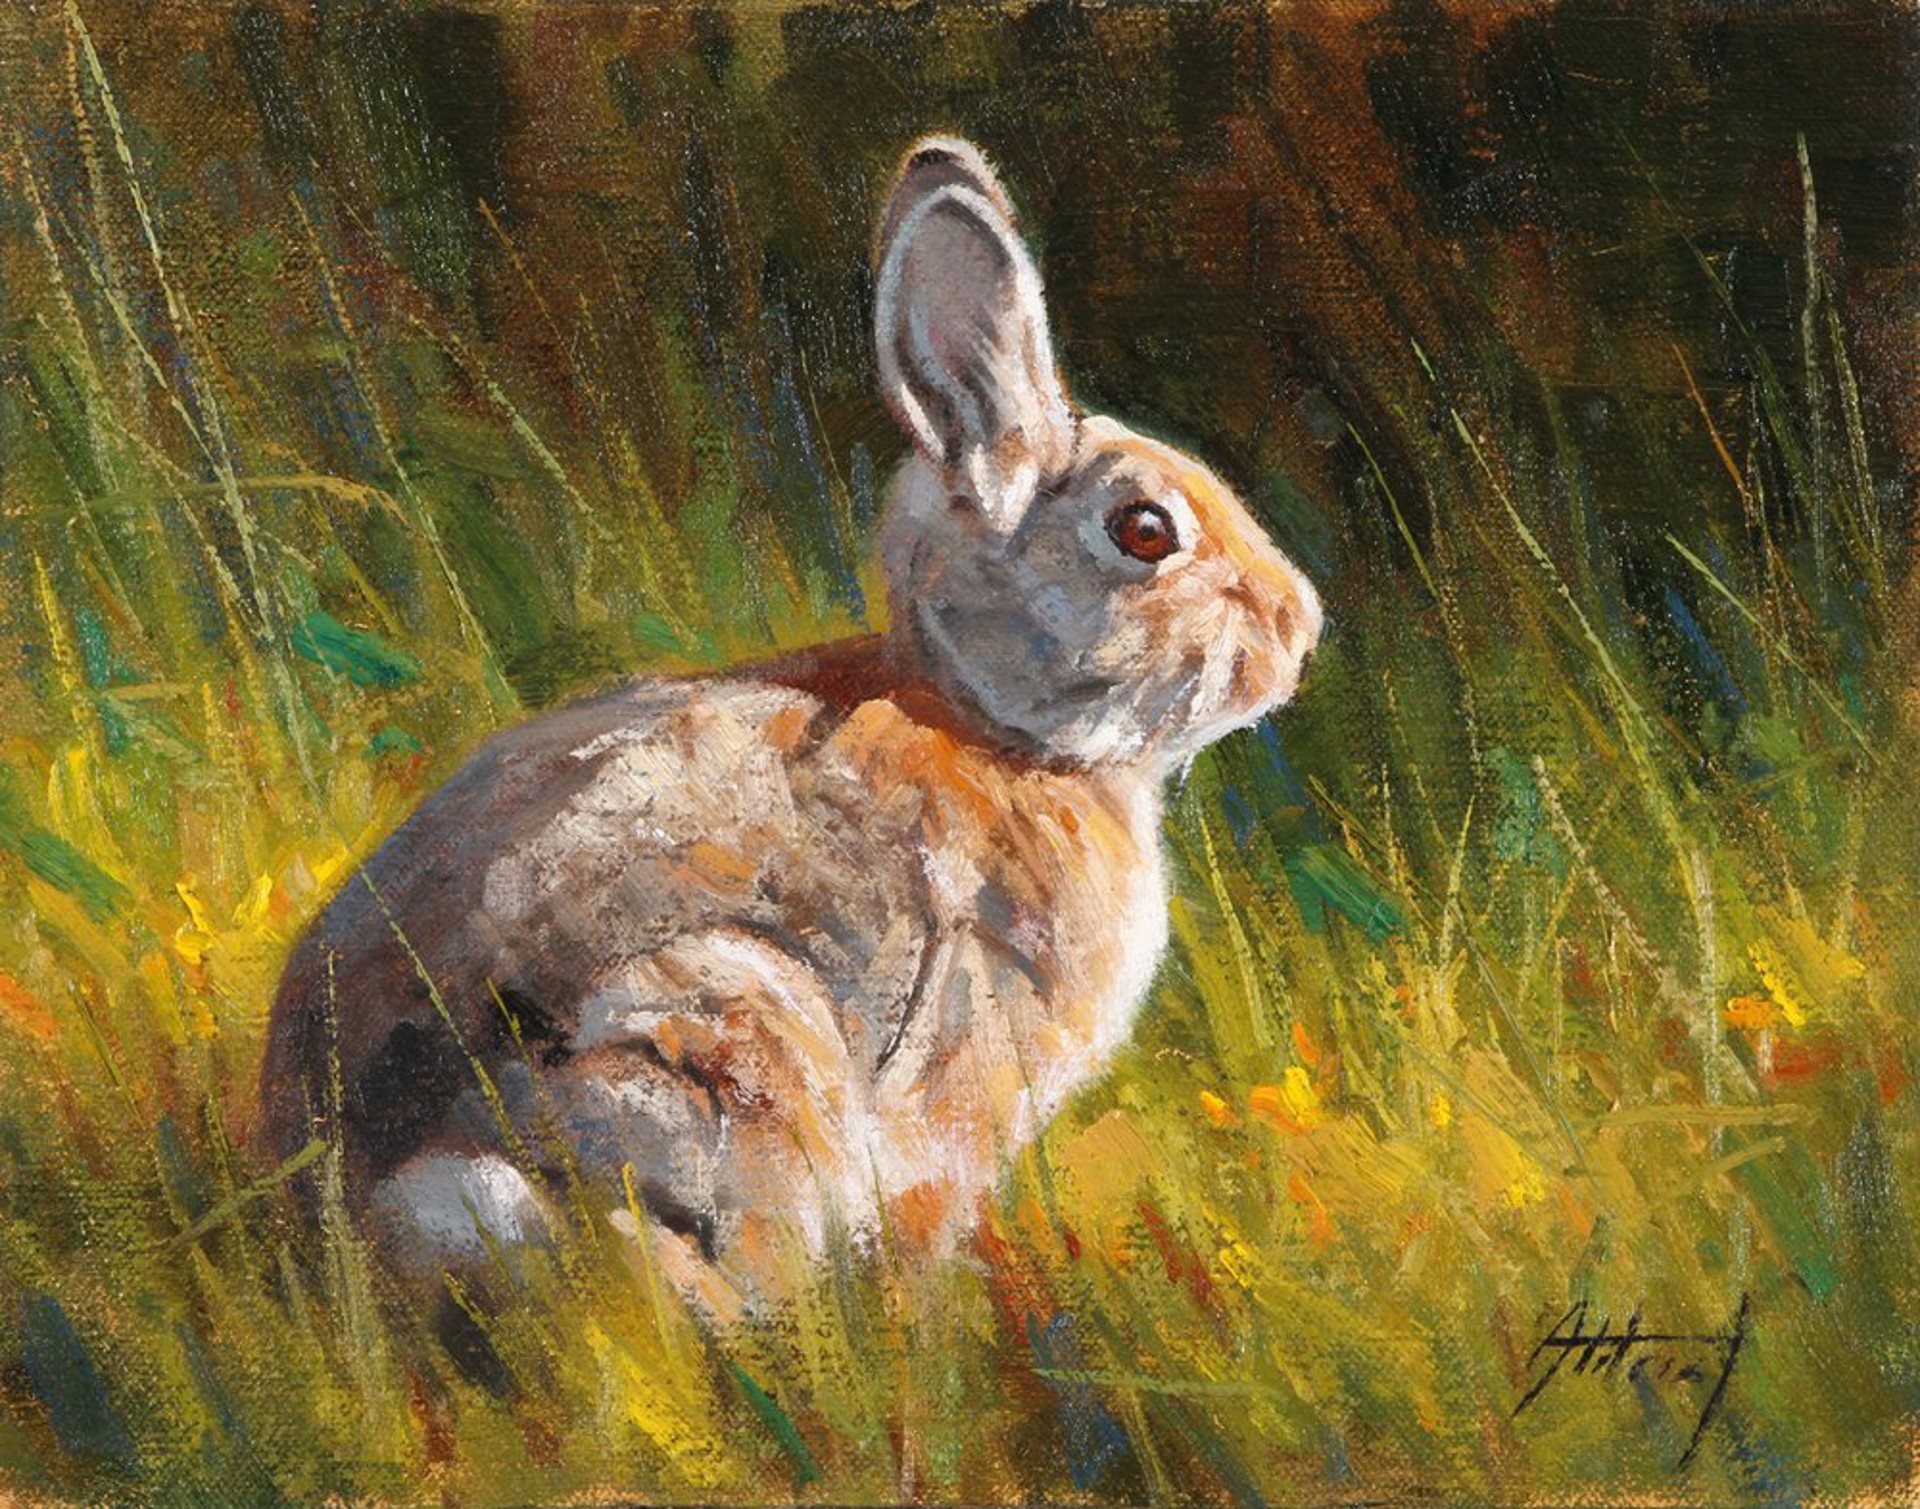 Rabbit by Ed Aldrich